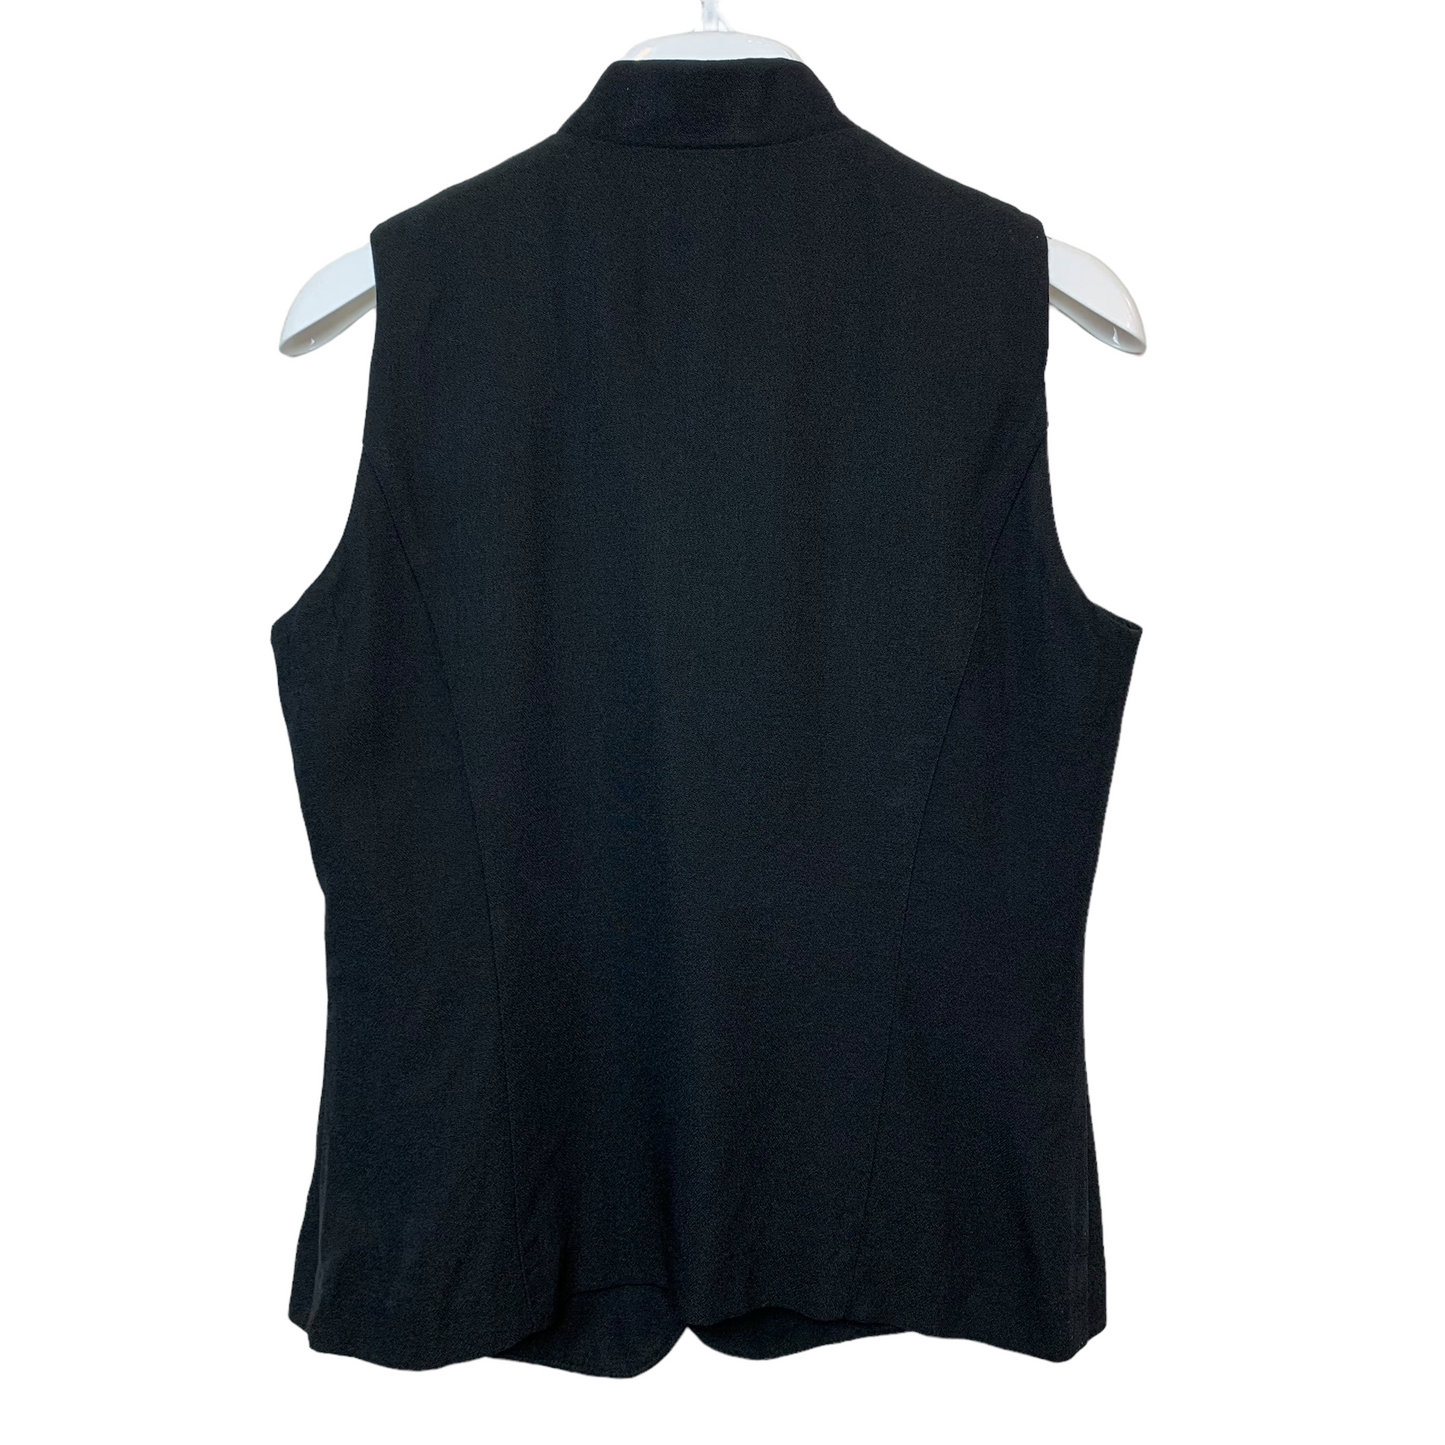 Vintage Maren Black Vest 8 Made in the USA